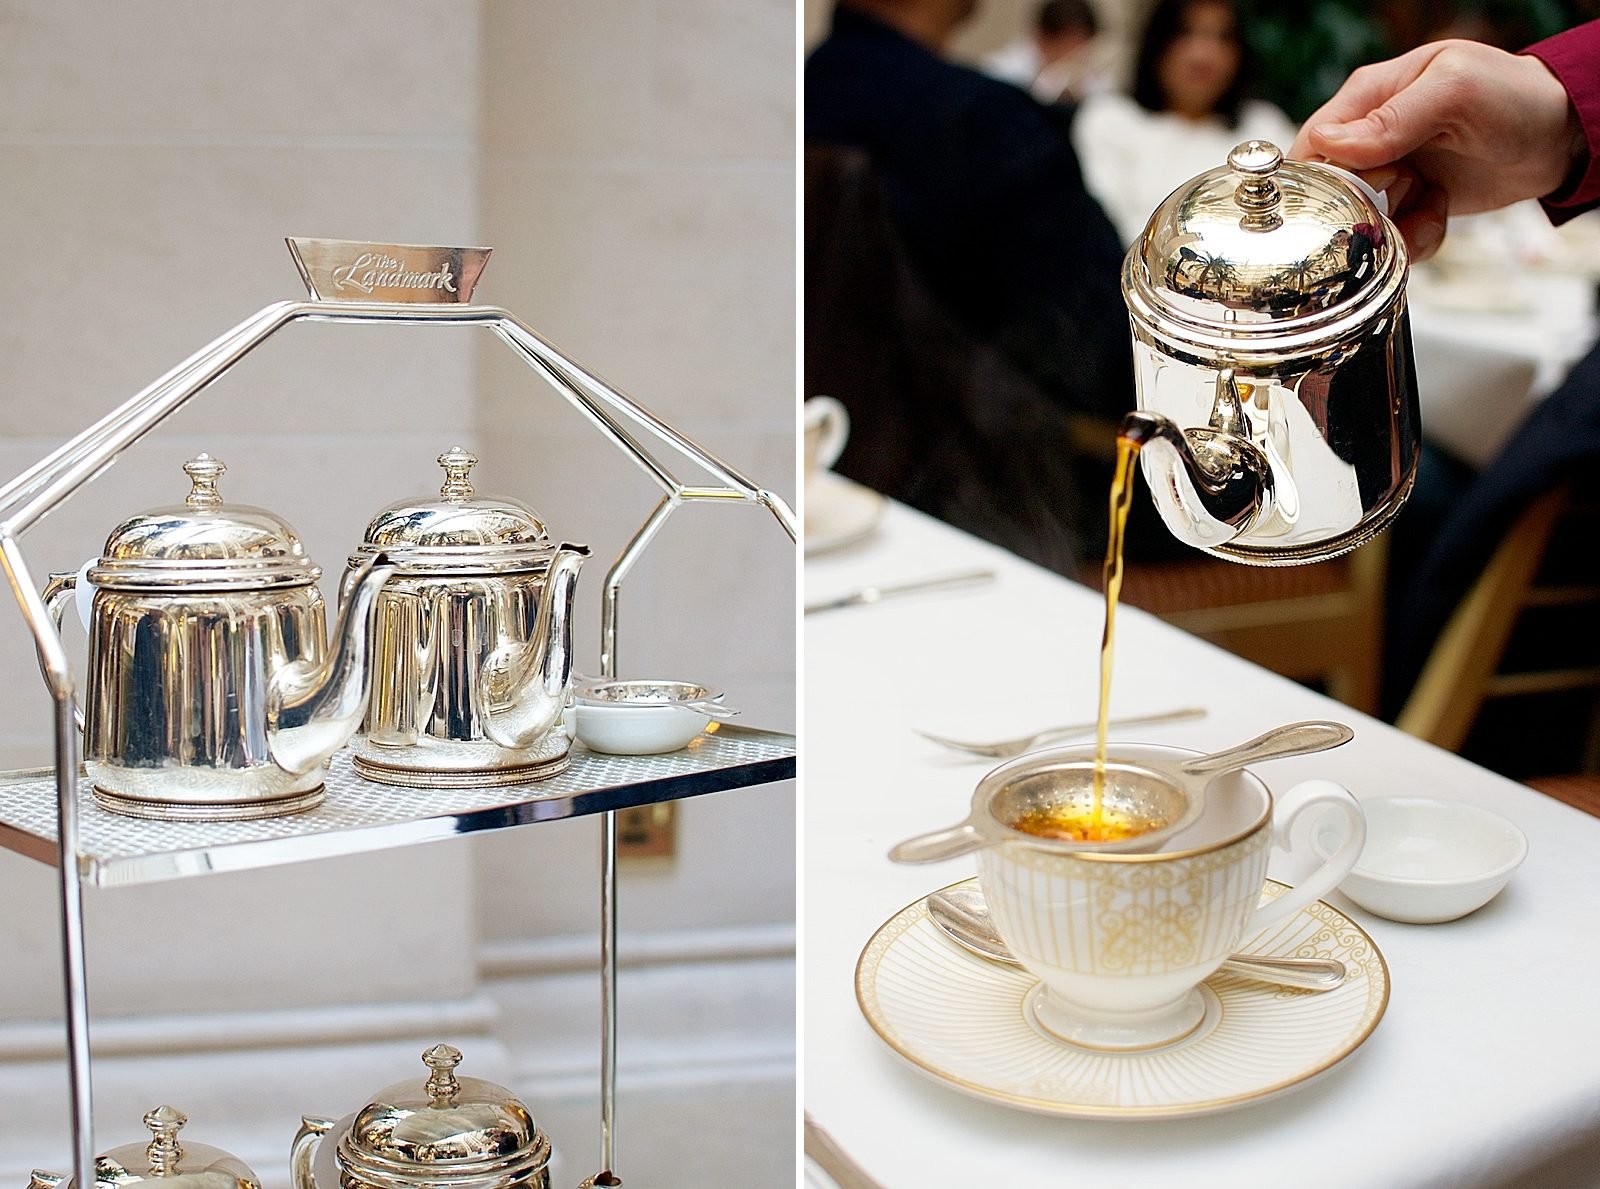 Afternoon Tea at The Landmark London